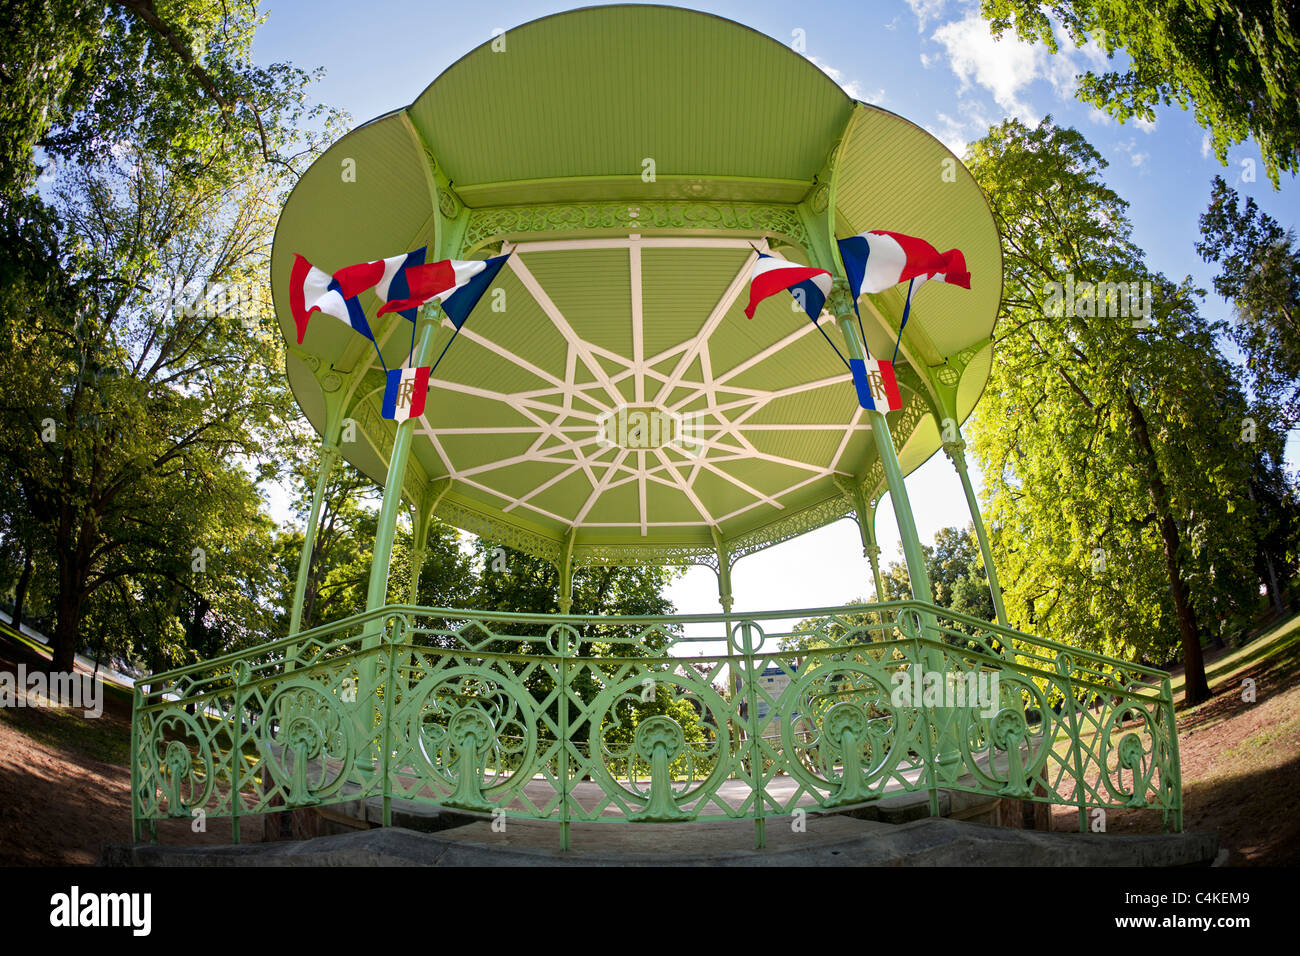 Il 'Bourins' Park bandstand a Vichy (Francia). Kiosque à musique du parc des Bourins, à Vichy (Francia). Foto Stock